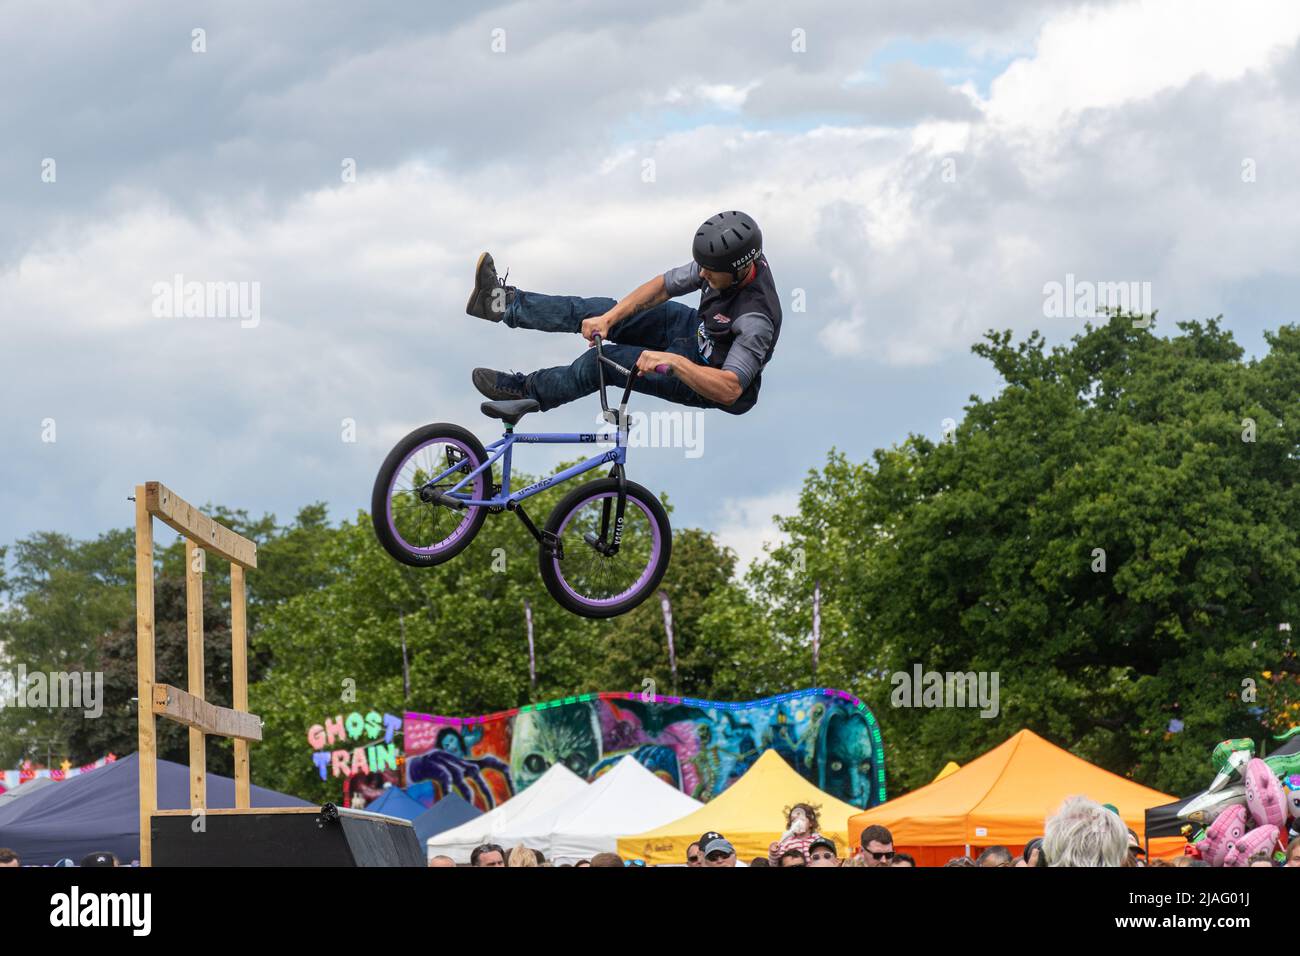 L'Extreme Mountain Bike Show si esibisce in un evento a Farnborough, Inghilterra, Regno Unito. Foto Stock